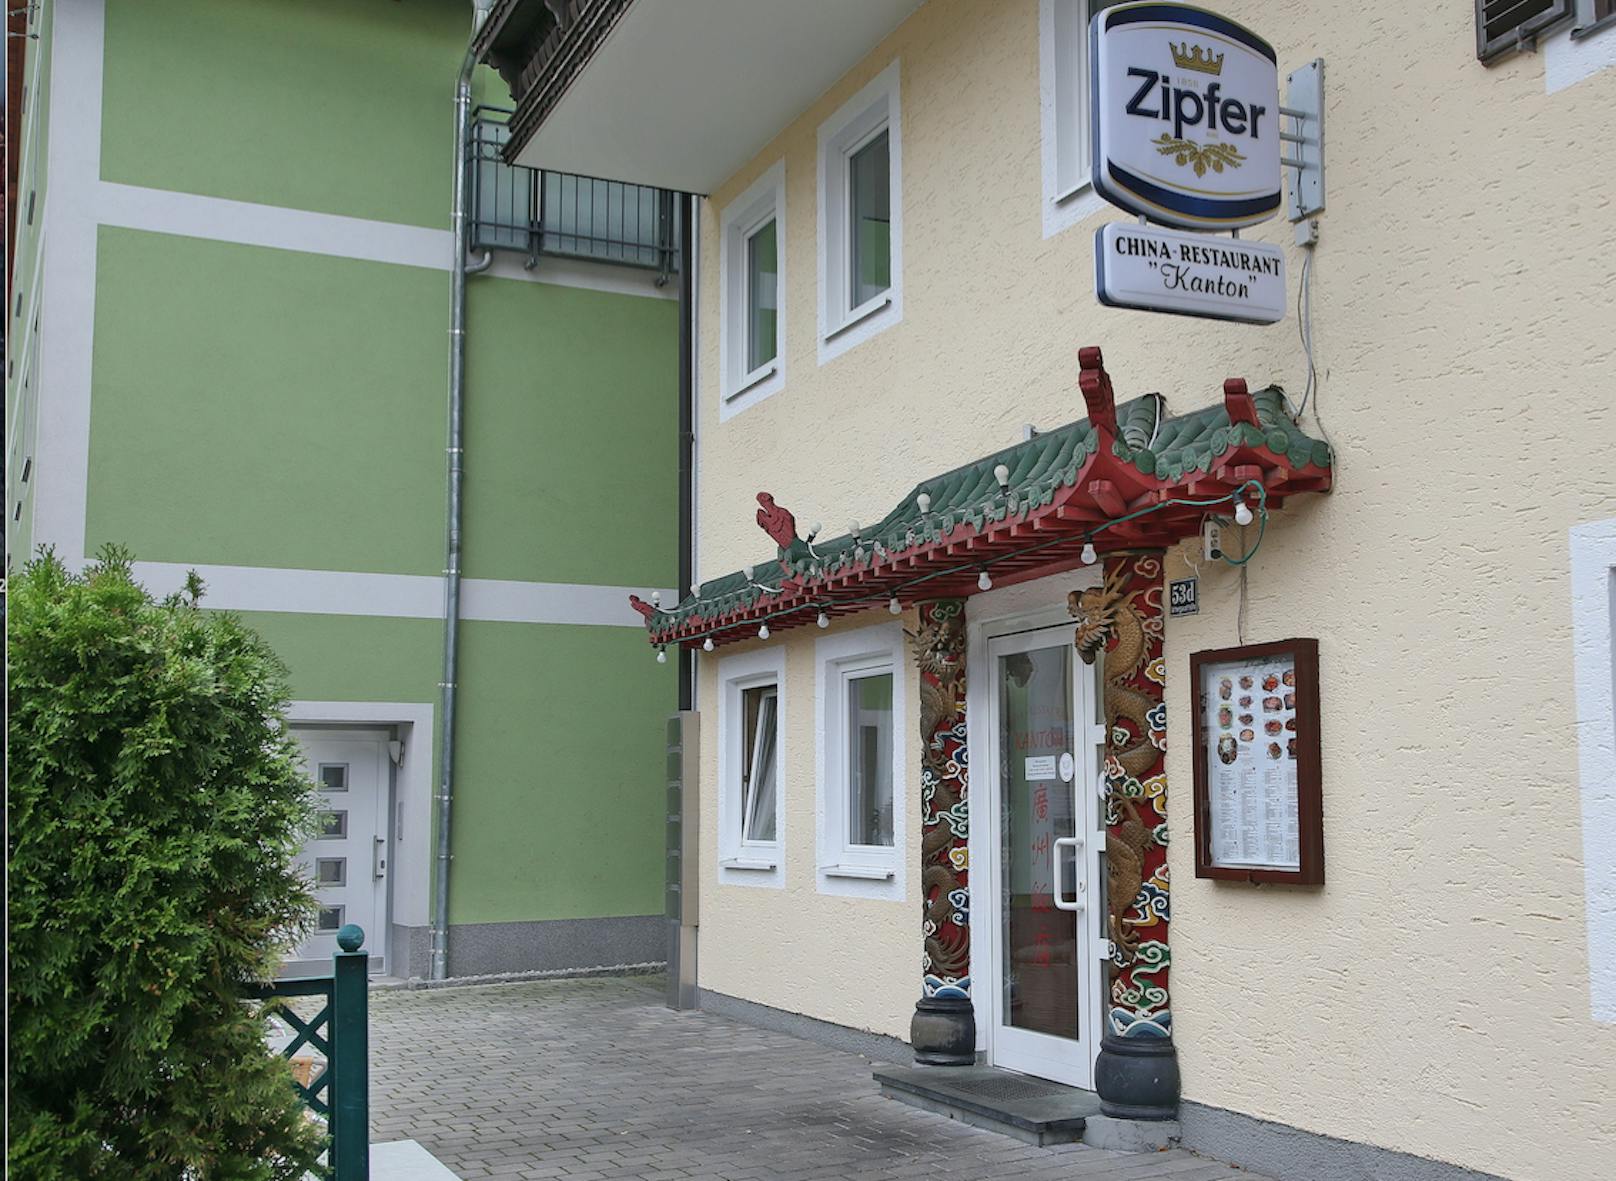 In dieses China-Restaurant in St. Gerogen war der Mann eingebrochen, schlief dann auf einer Eckbank ein.